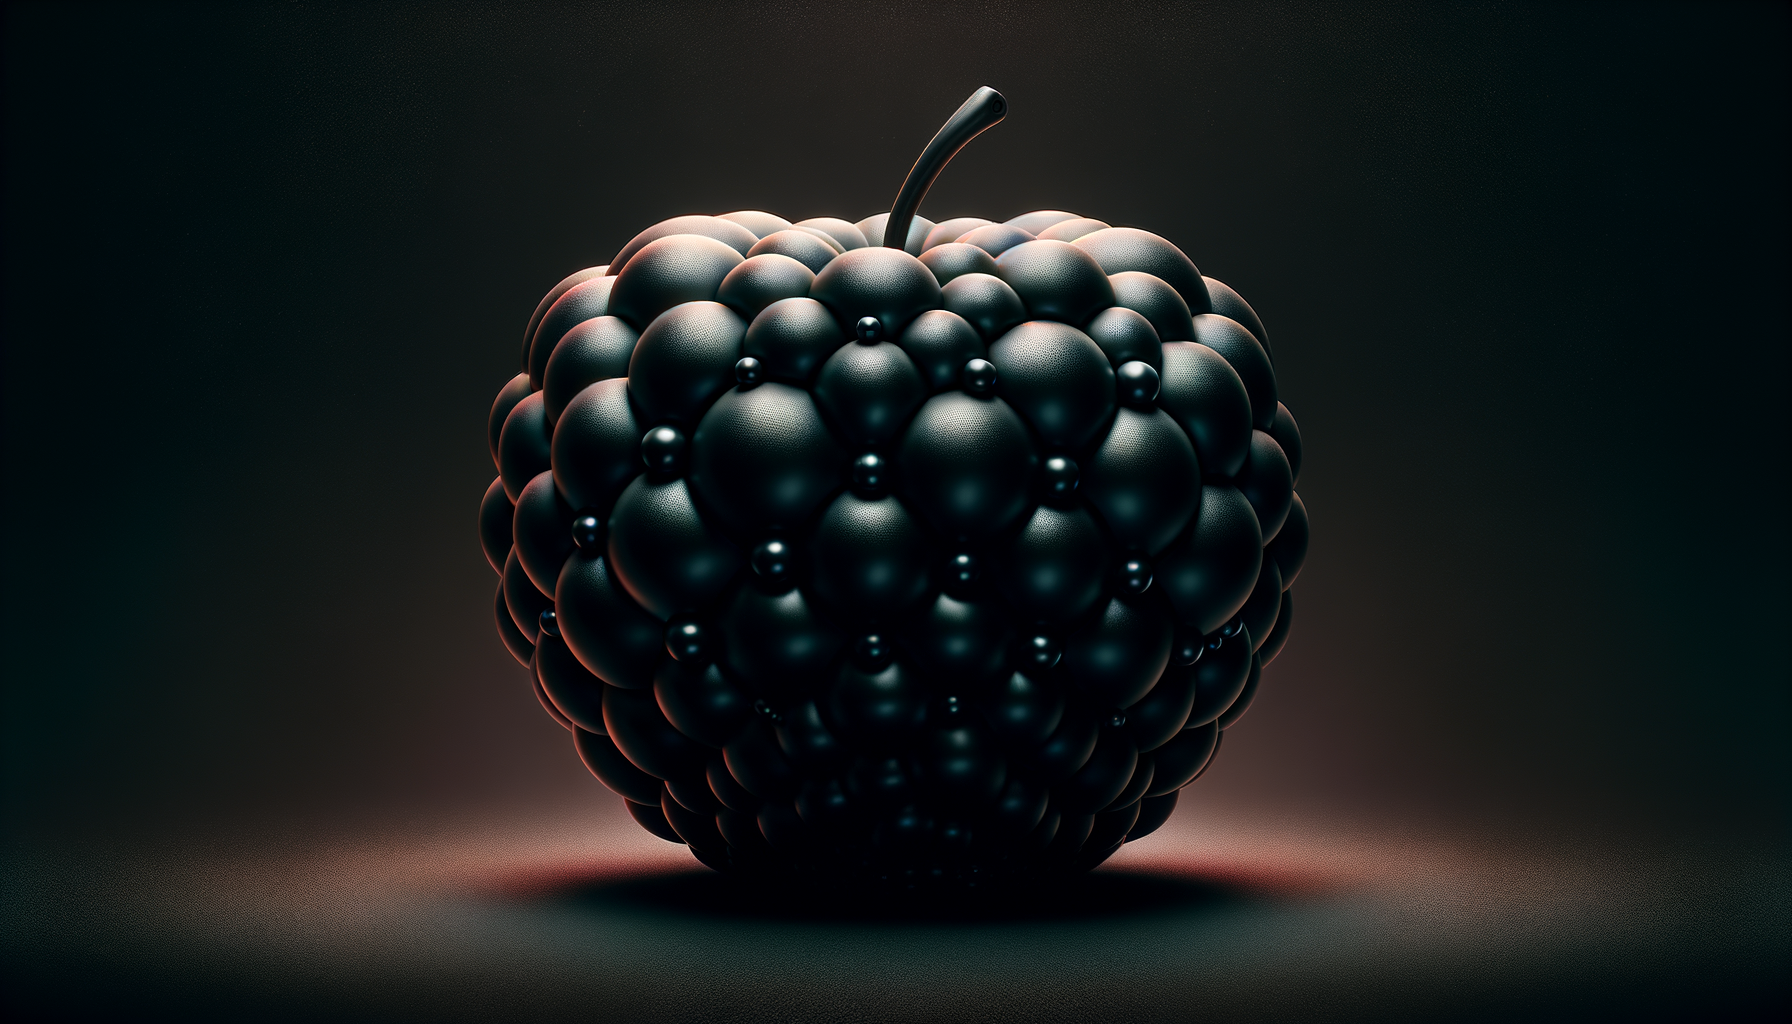 black apple